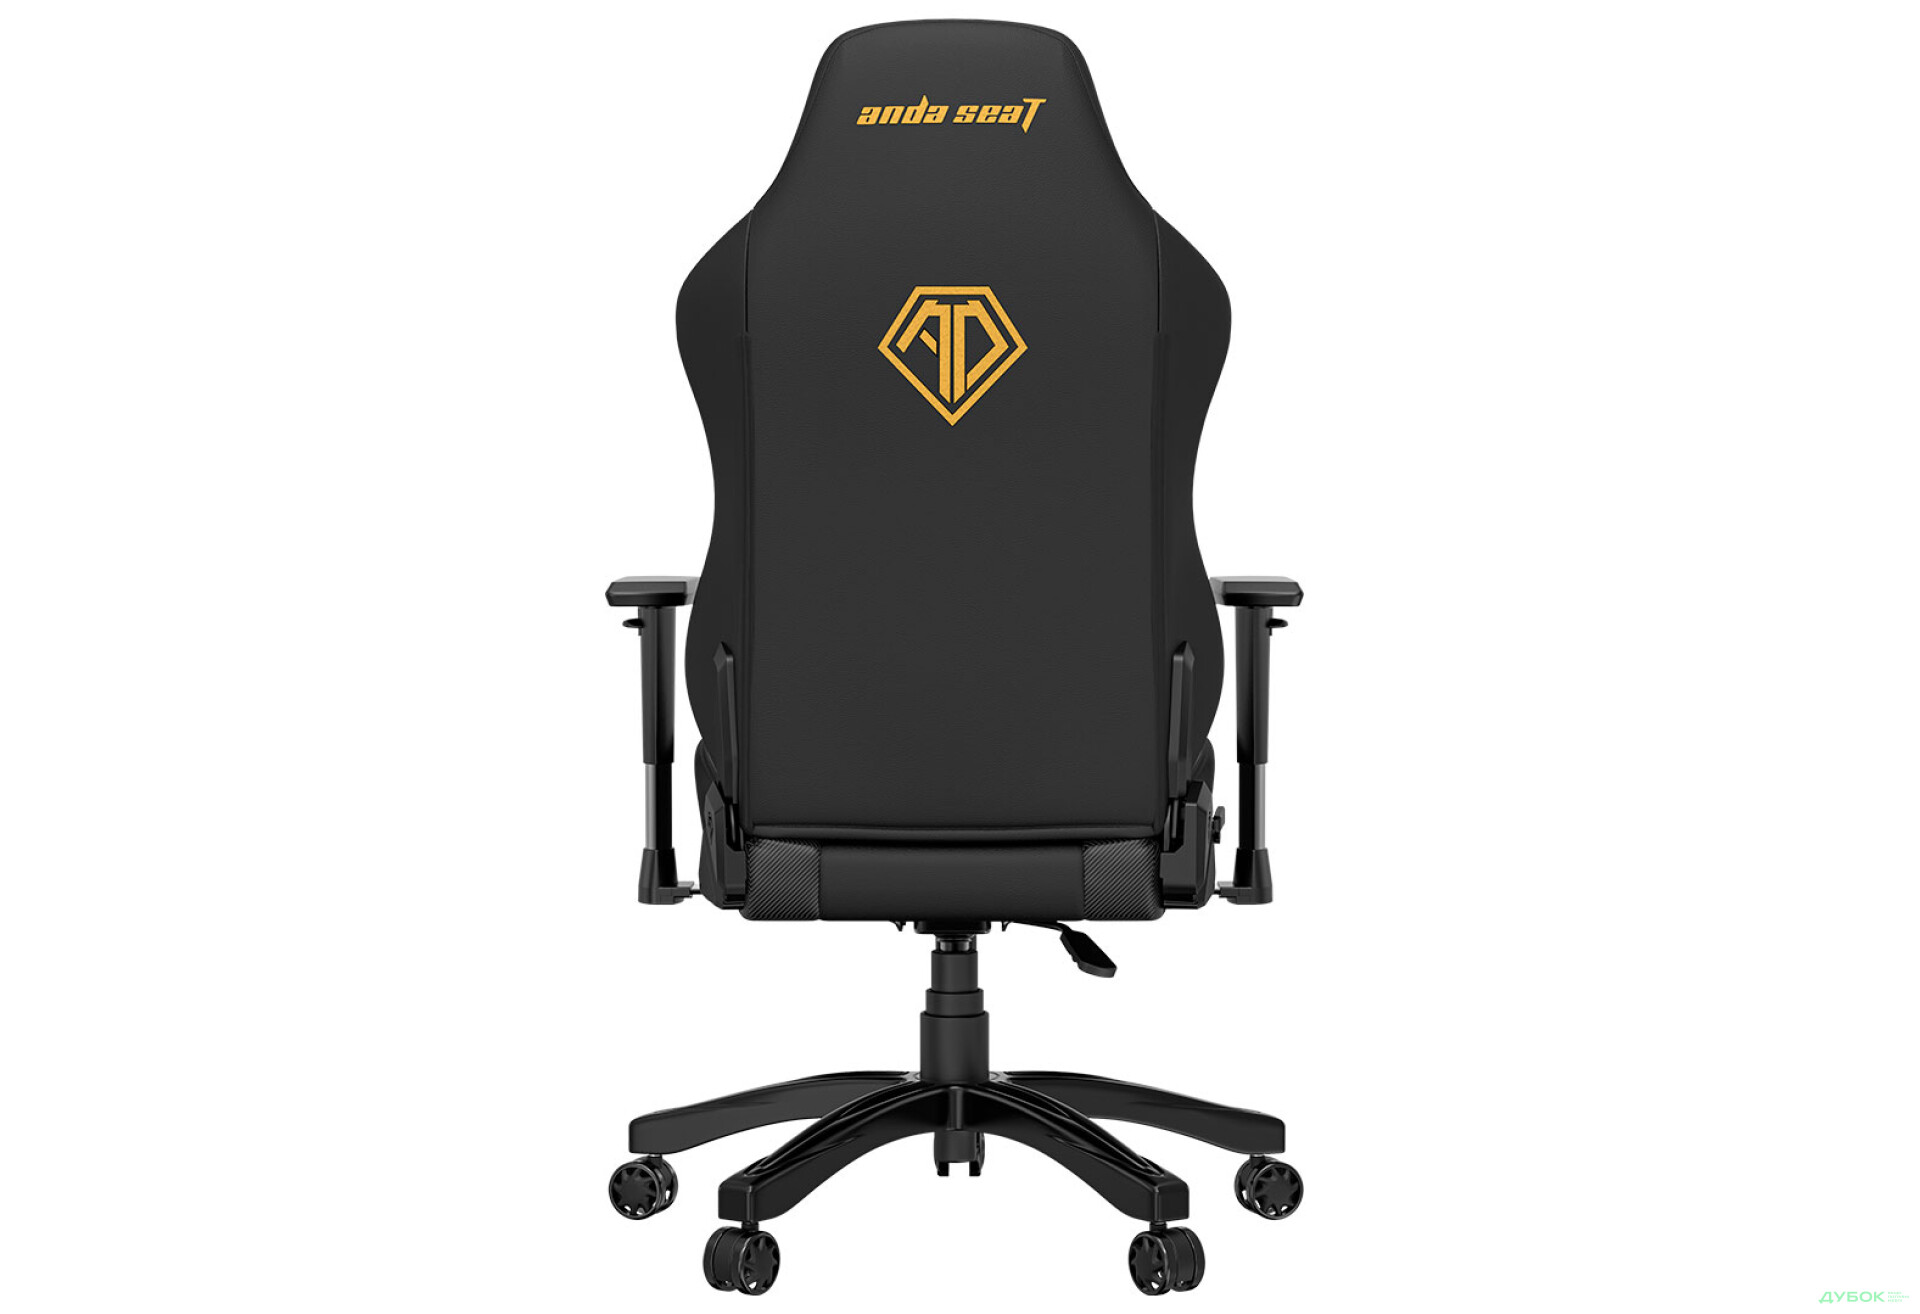 Фото 5 - Комп'ютерне крісло Anda Seat Phantom 3 70x55x134 см ігрове, чорне із золотом